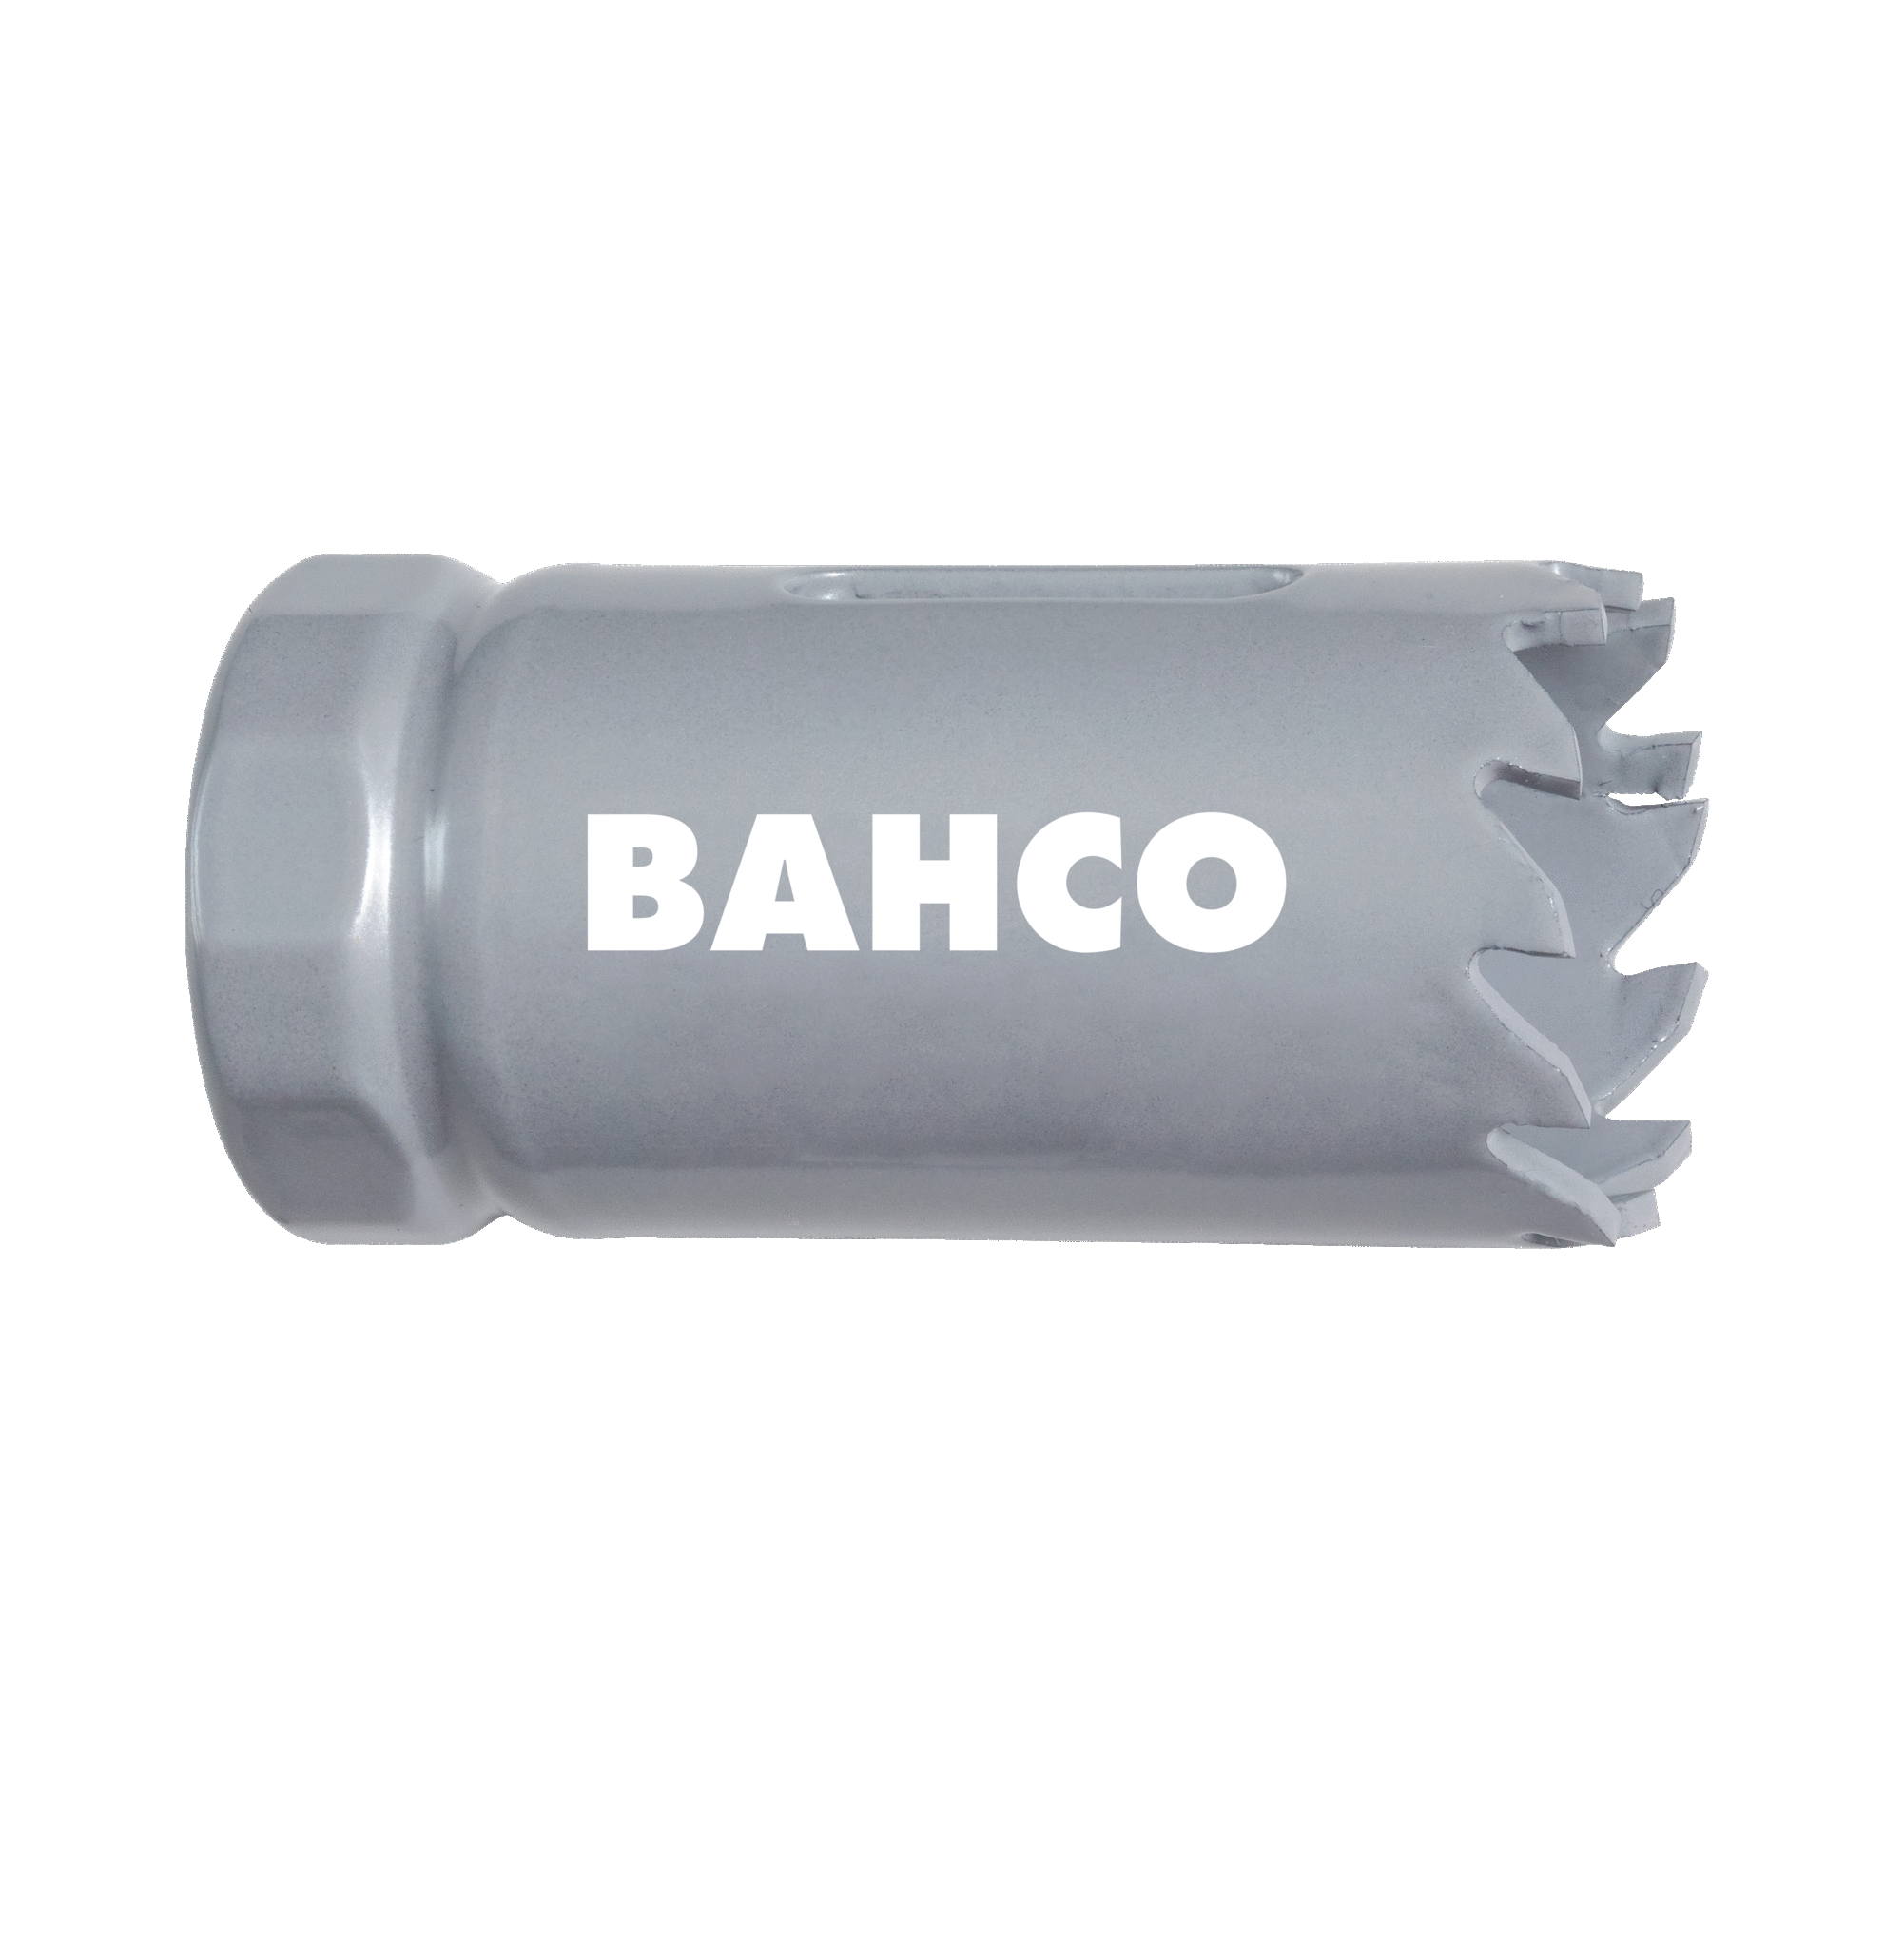 Кольцевые пилы с твердосплавными напайками BAHCO 3832-92